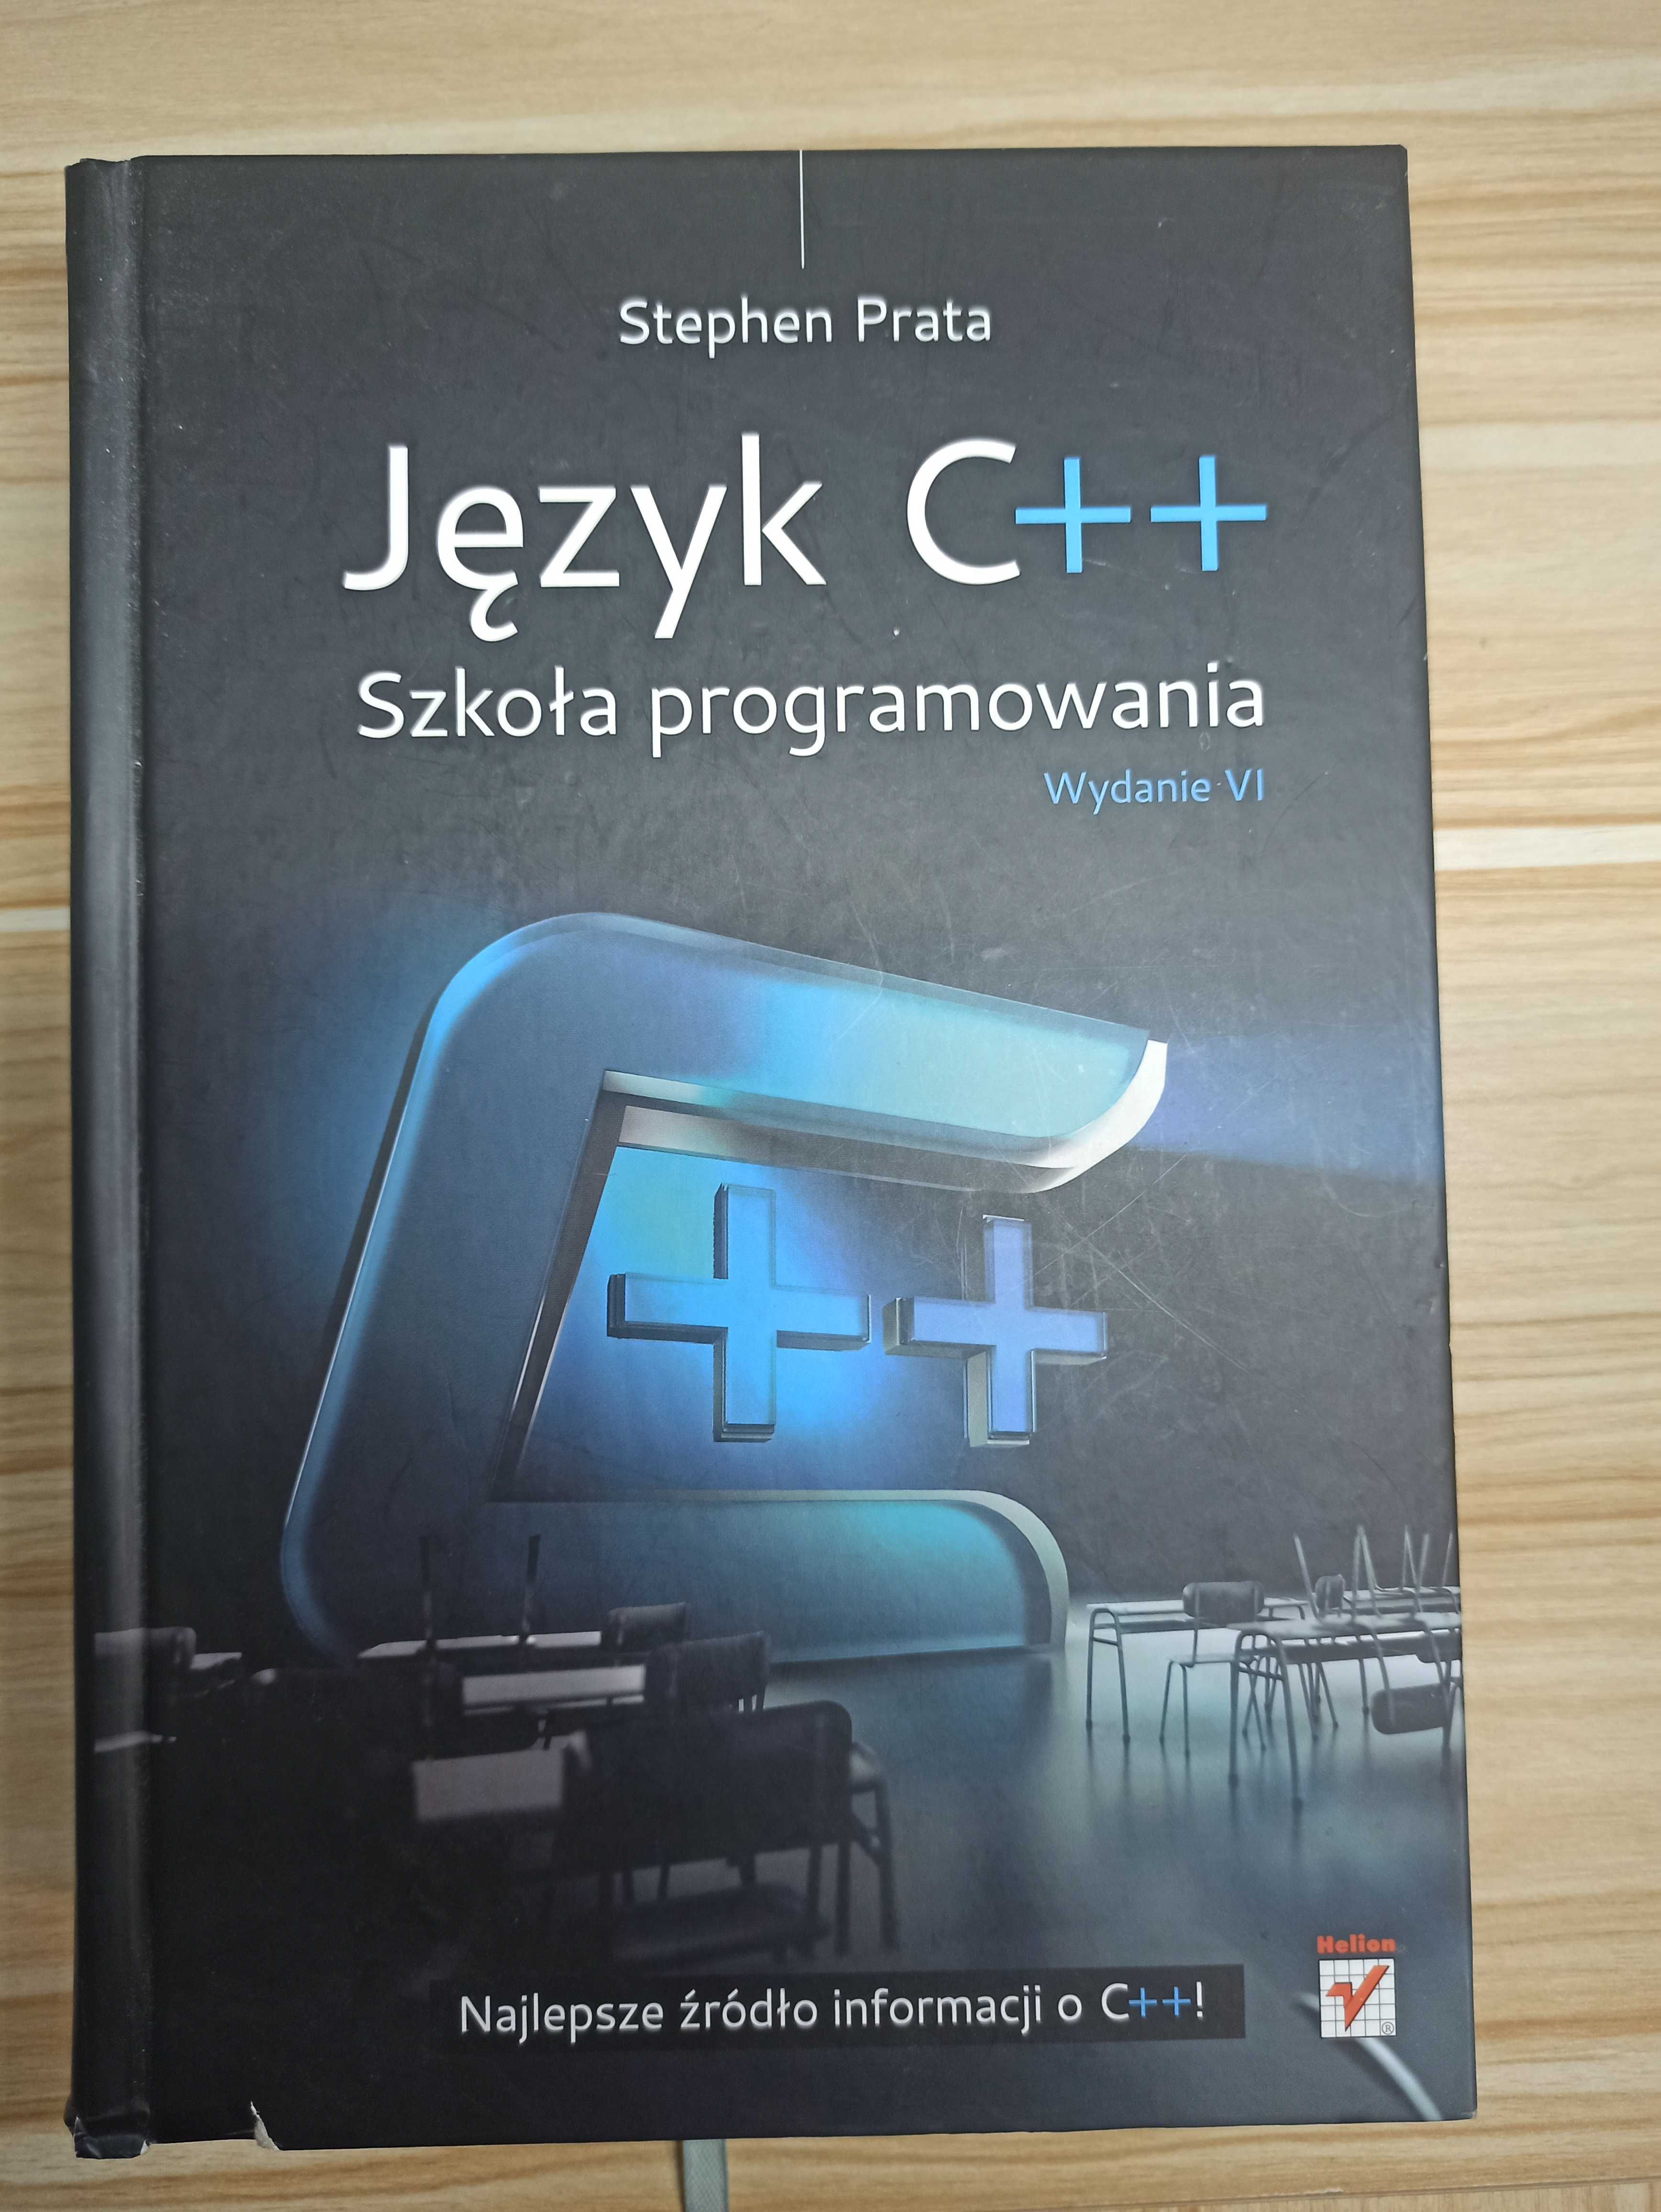 Książka "Język C++" Wydanie VI